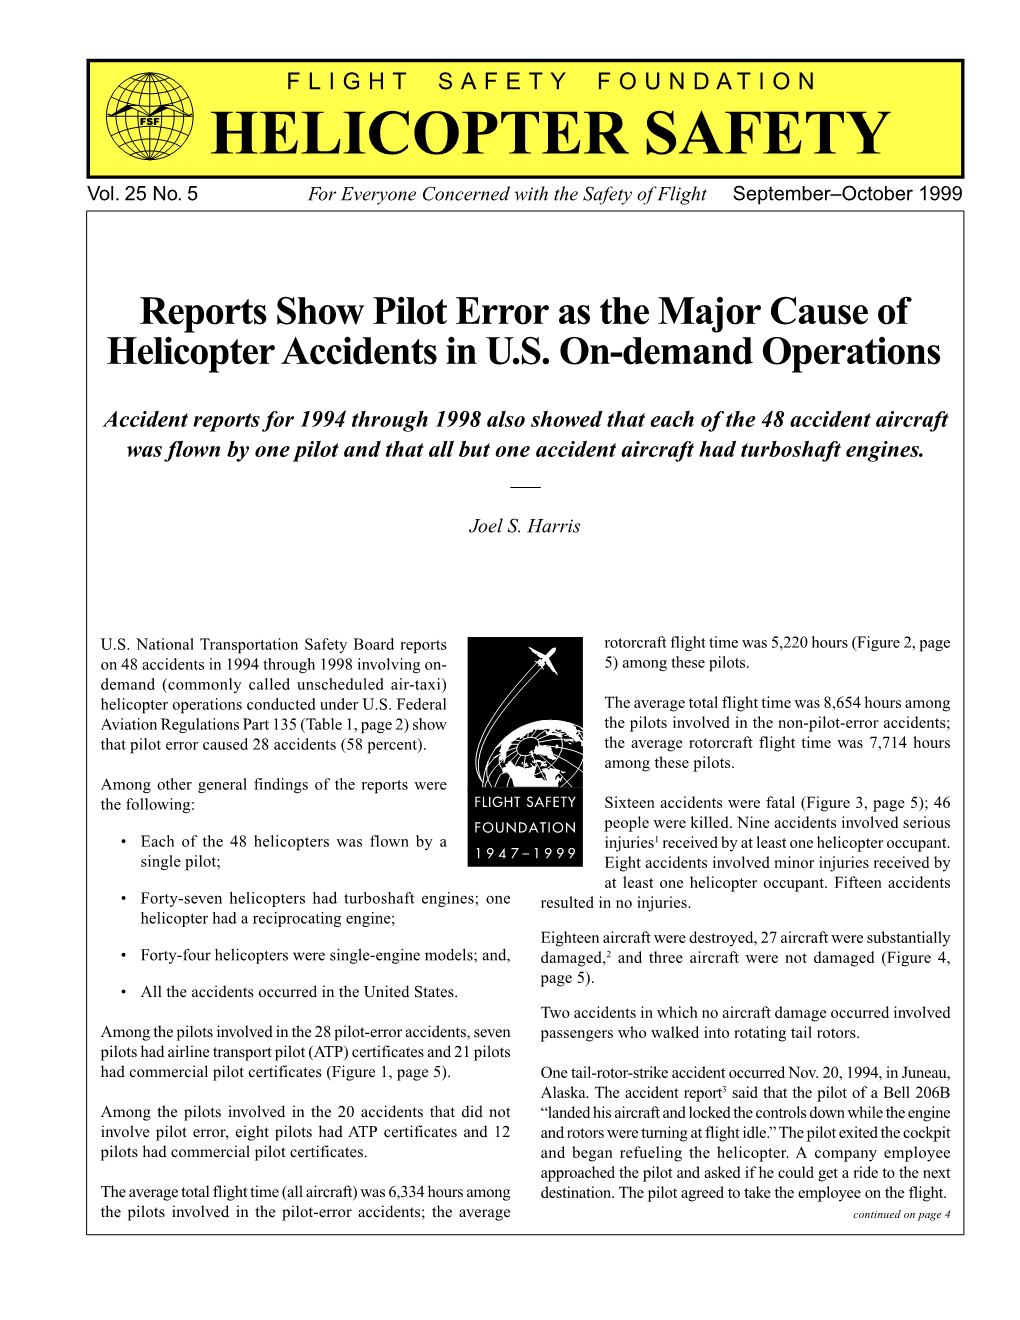 Helicopter Safety September-October 1999